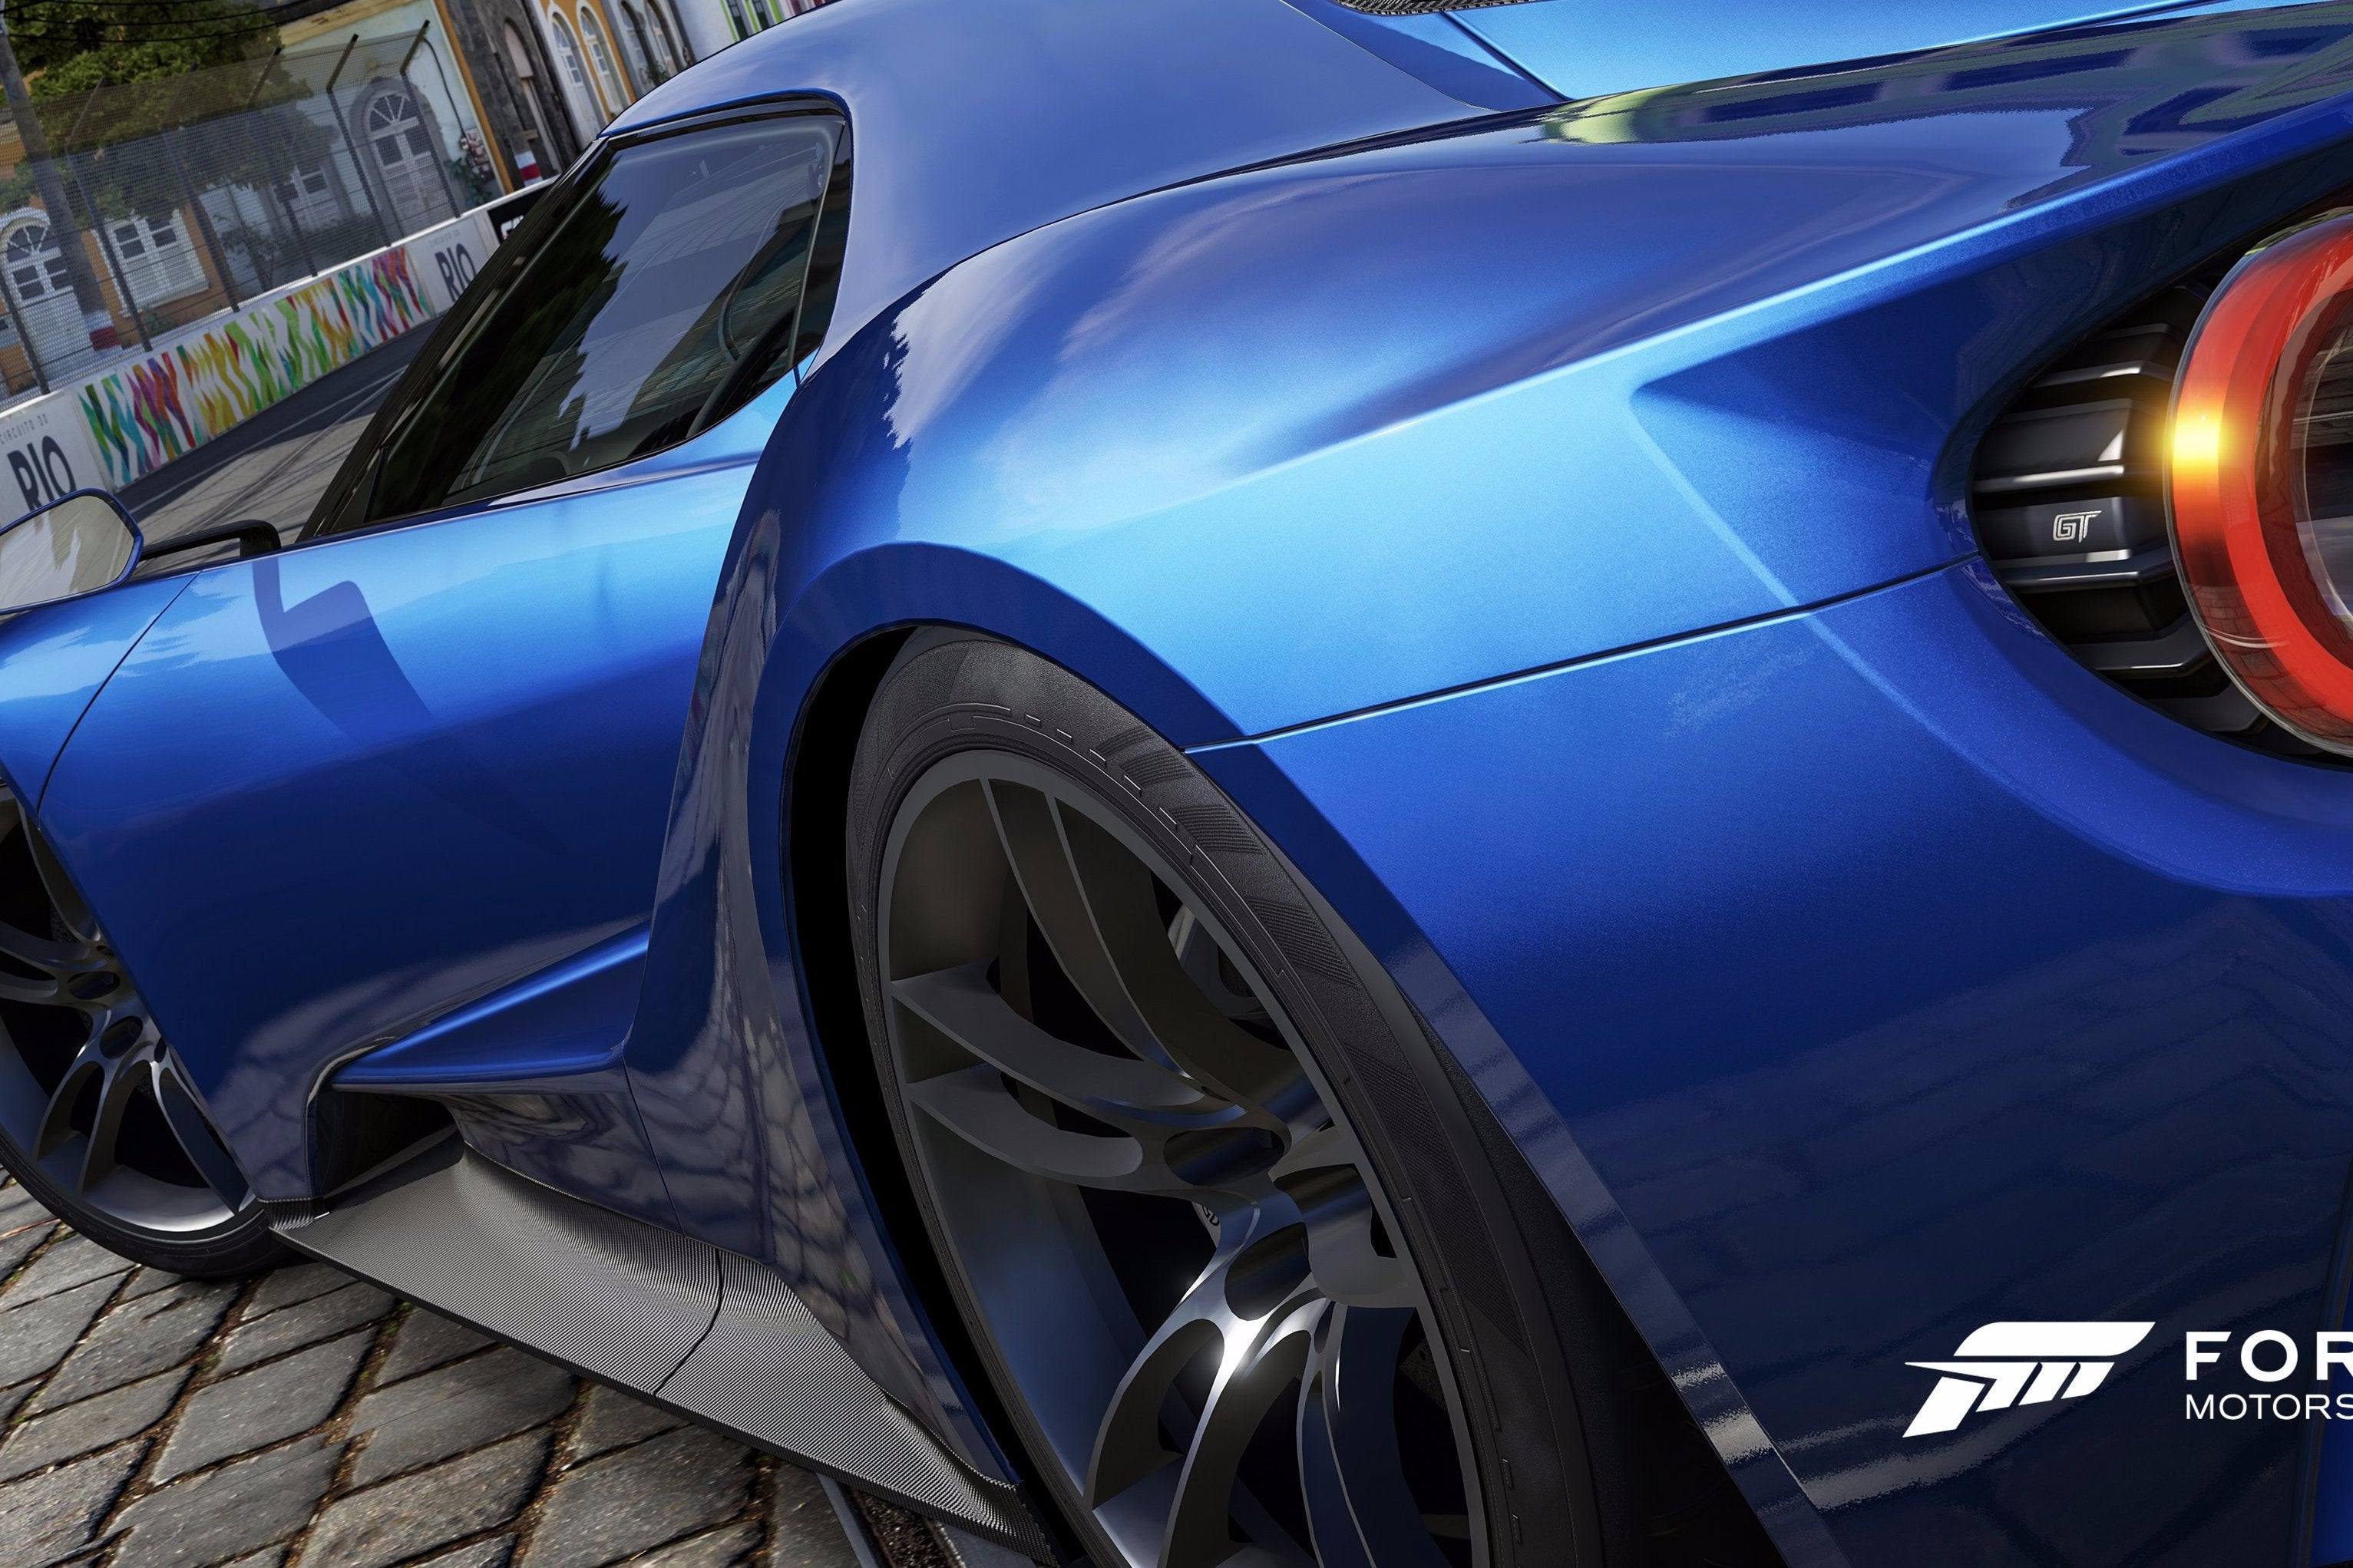 Obrazki dla Forza 6 bez rozgrywki międzyplatformowej